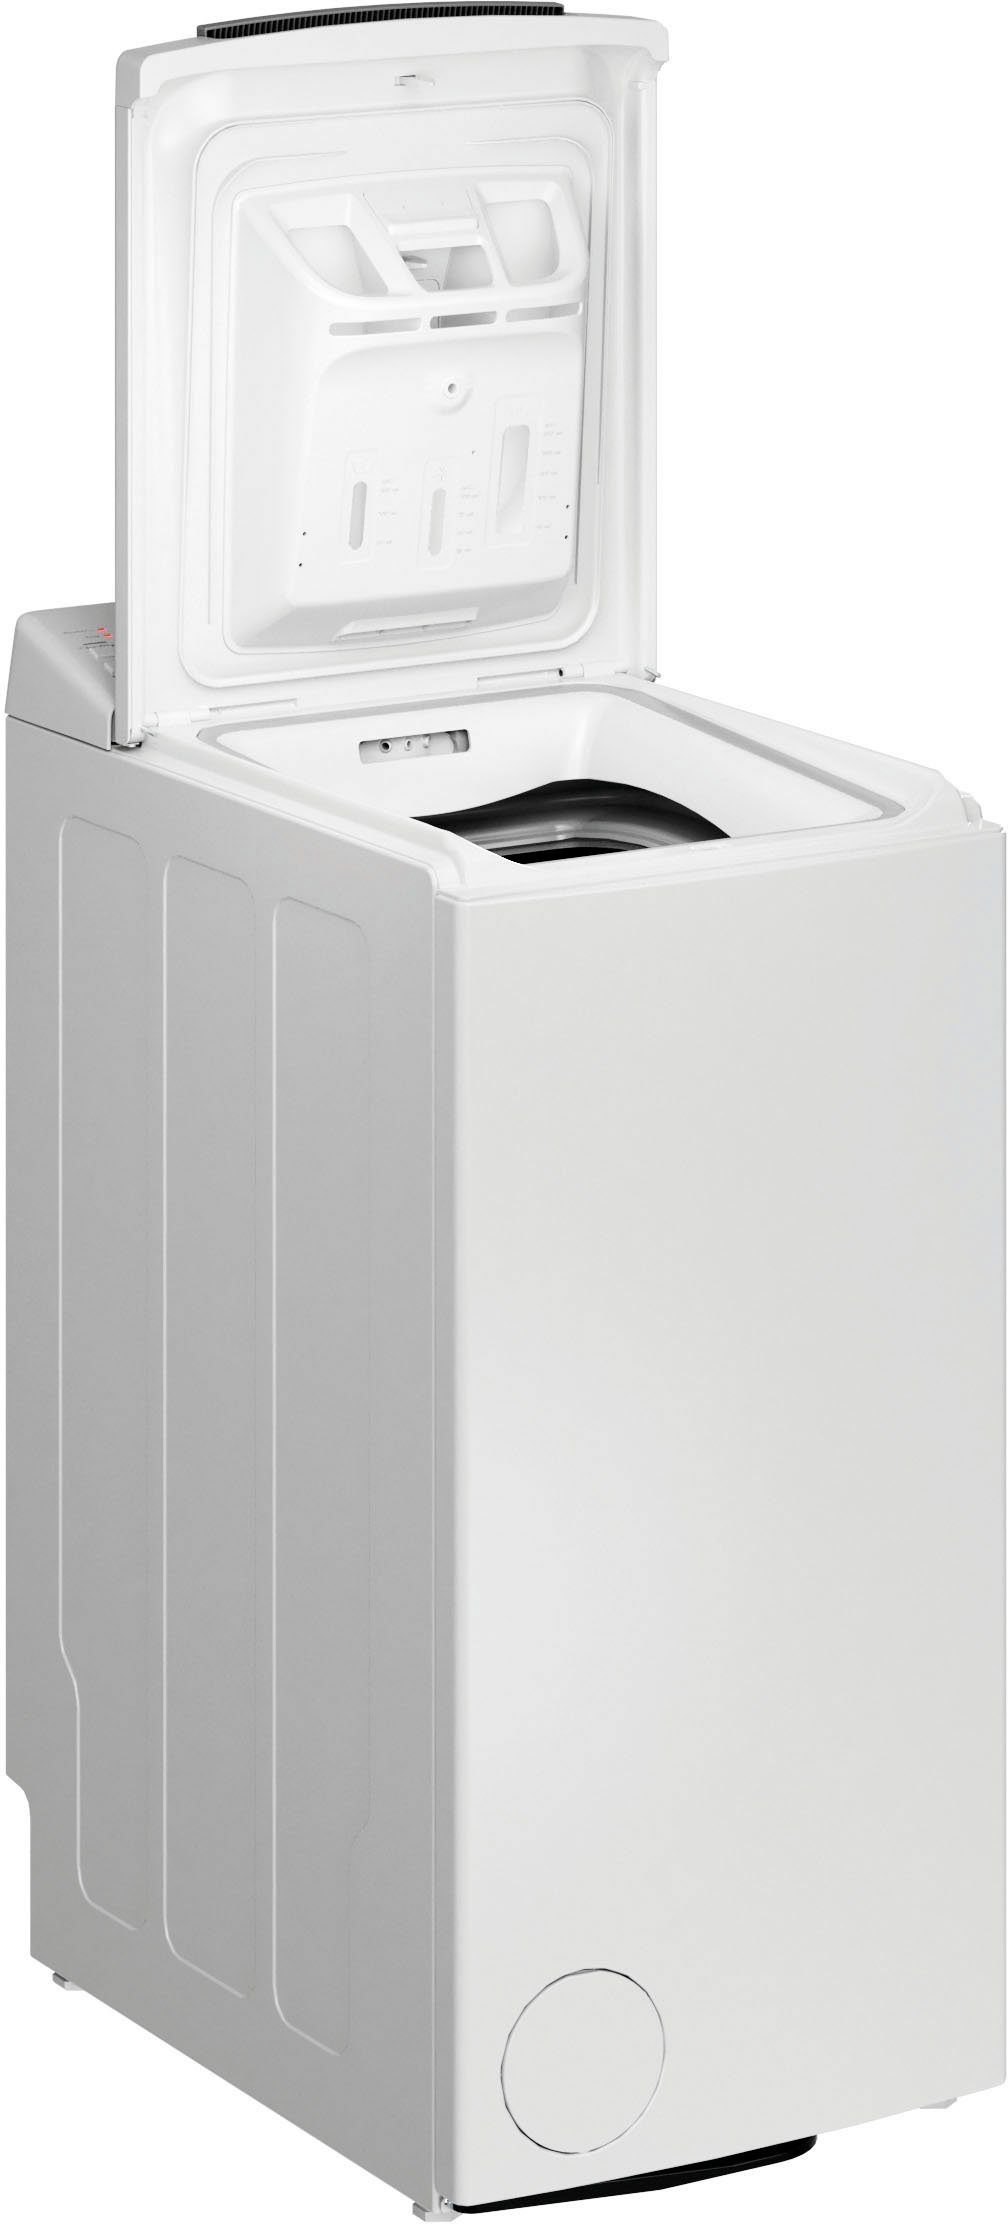 BAUKNECHT Waschmaschine Toplader WMT Pro 6 6ZB, 1200 Eco kg, U/min